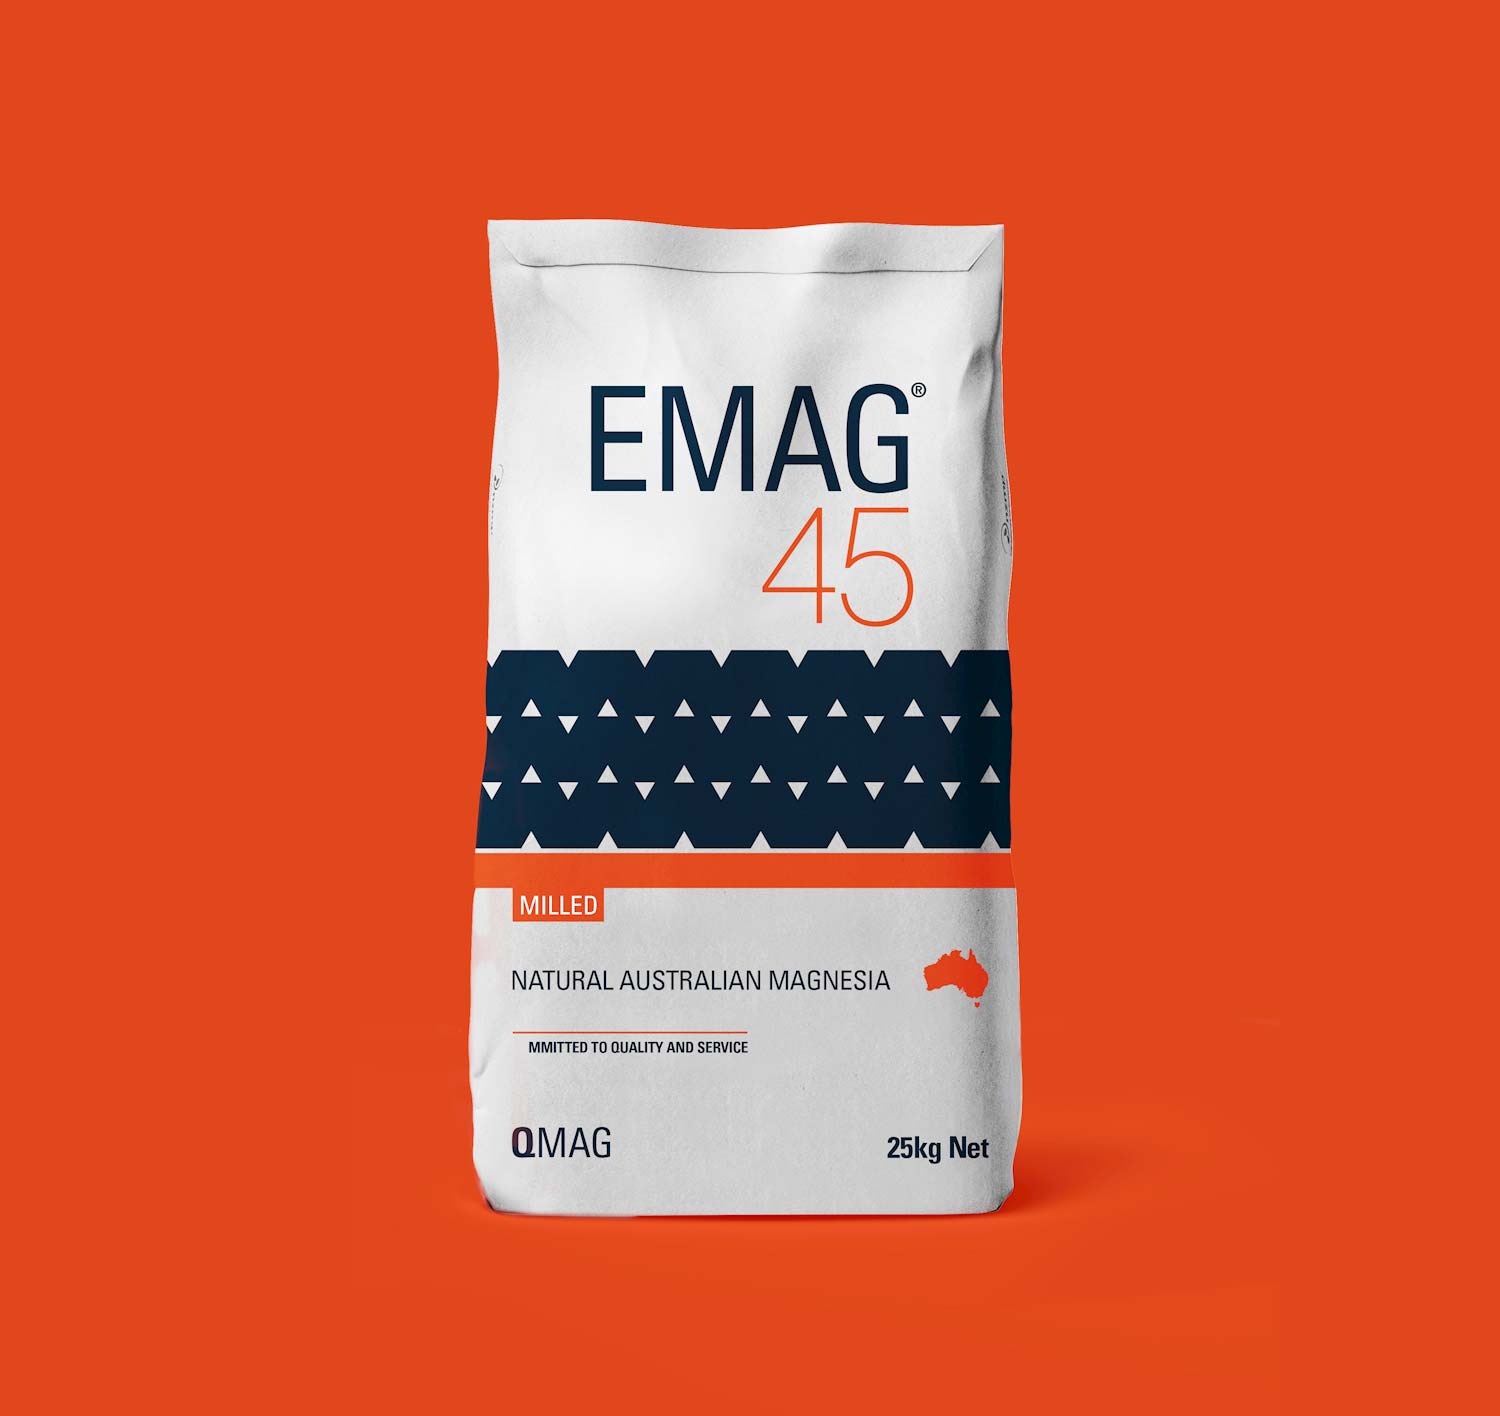 EMag Packaging Design After